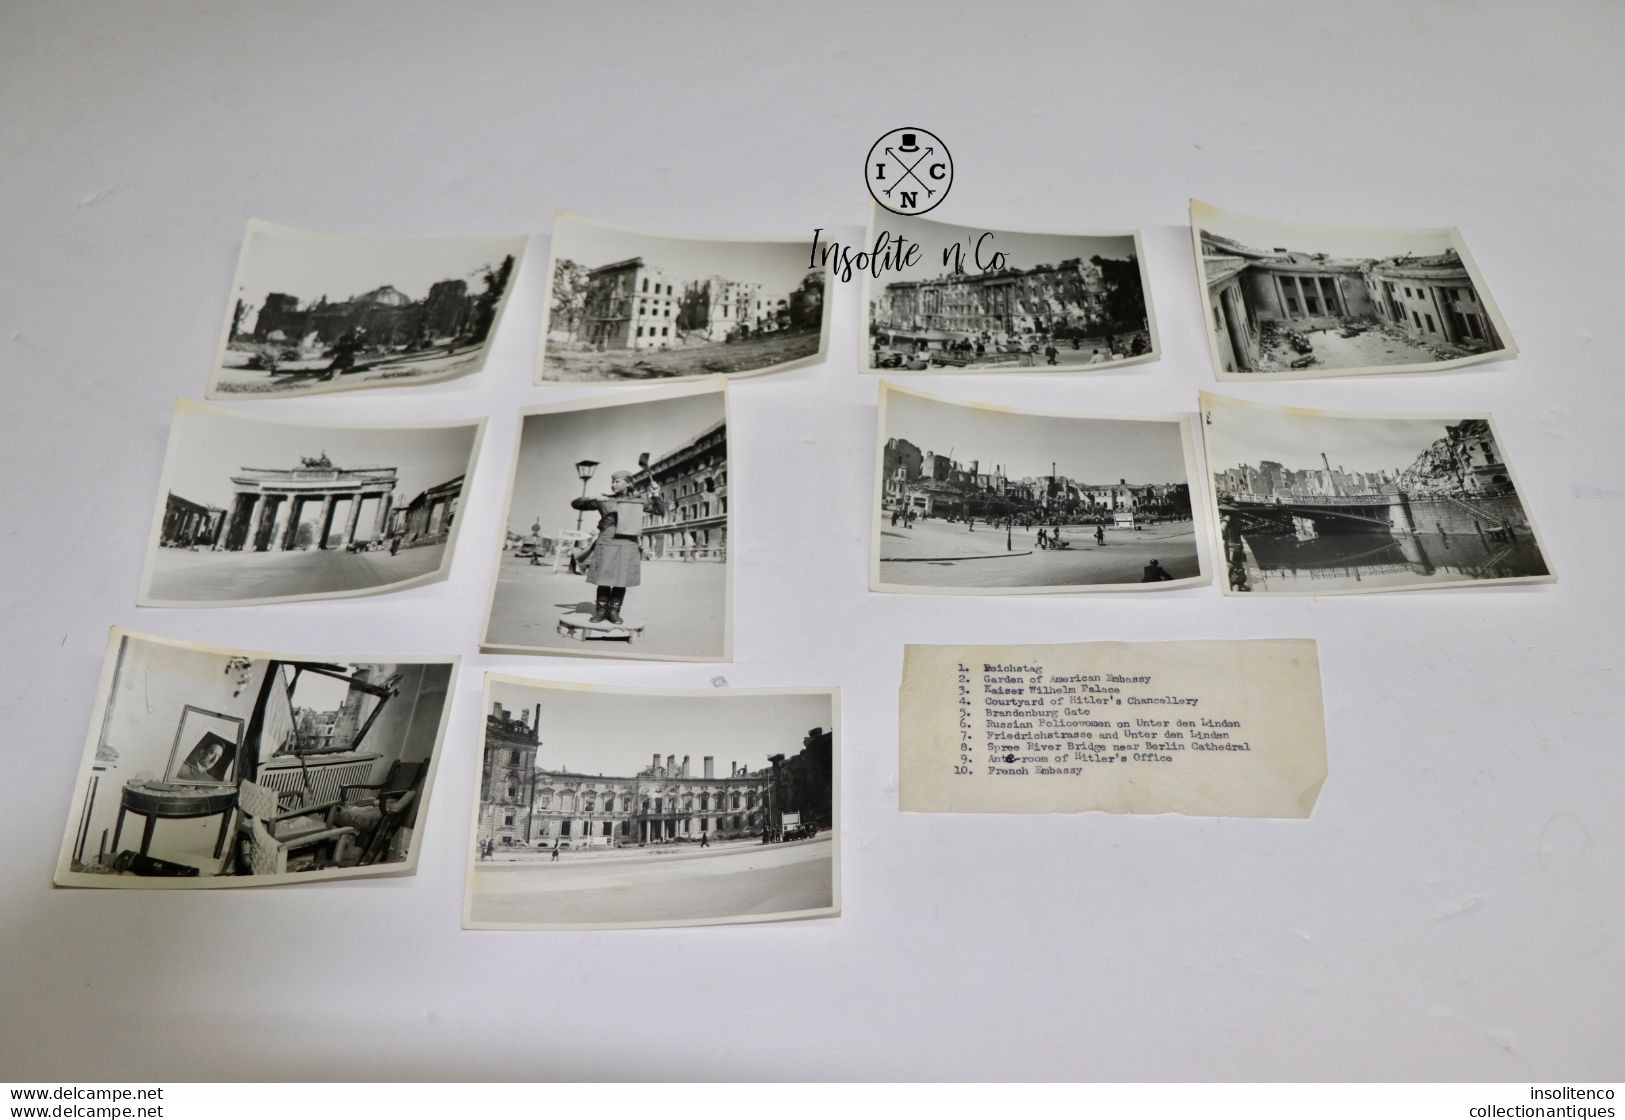 Très Rare 10 Photographies De Berlin Datant De Juillet 1945 Prises Par Un Soldat De L'équipe D'Eisenhower Non Publiées ! - 1939-45